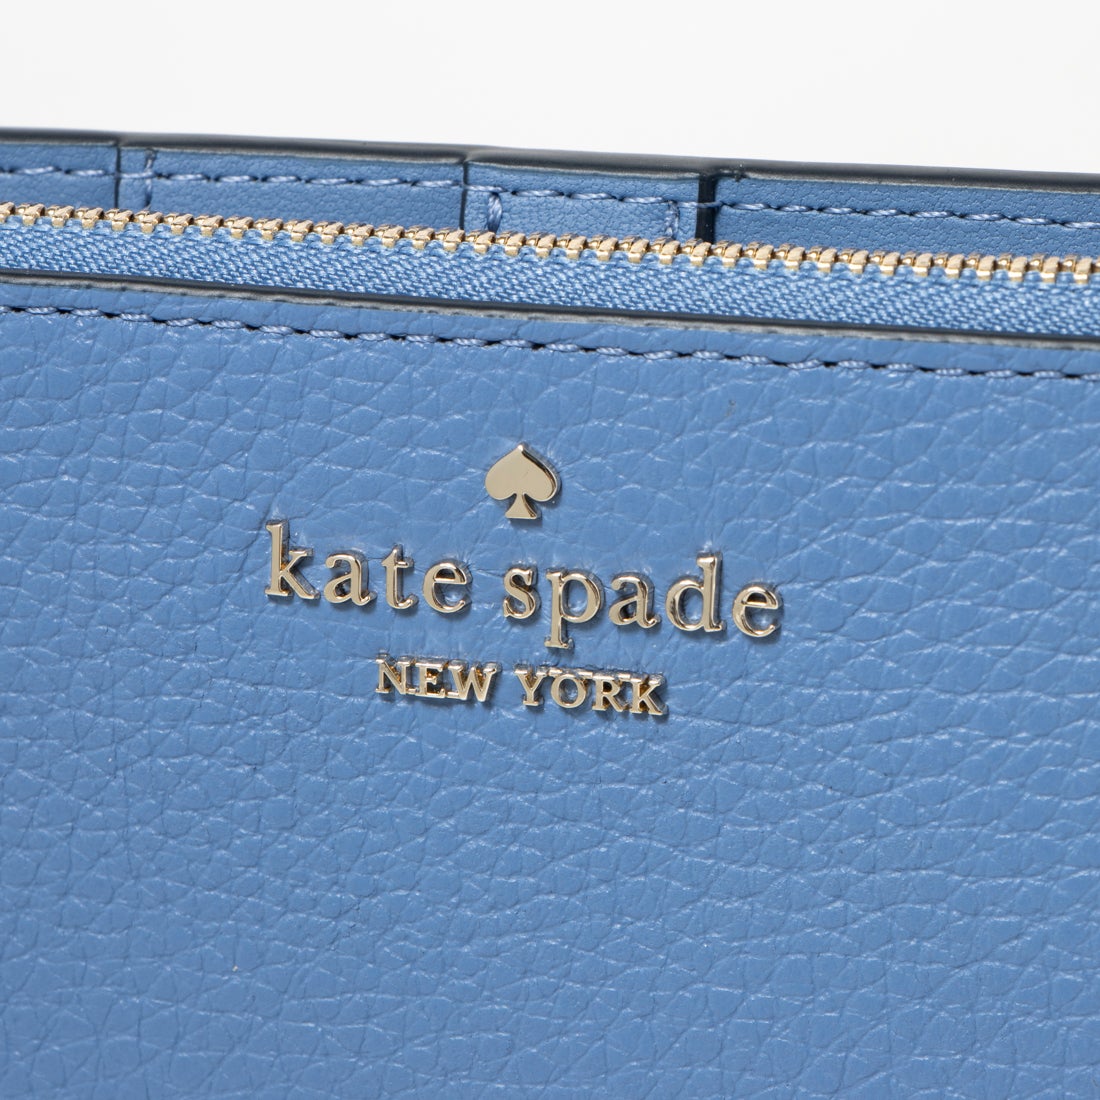 ケイトスペードニューヨーク kate spade new york カードケース